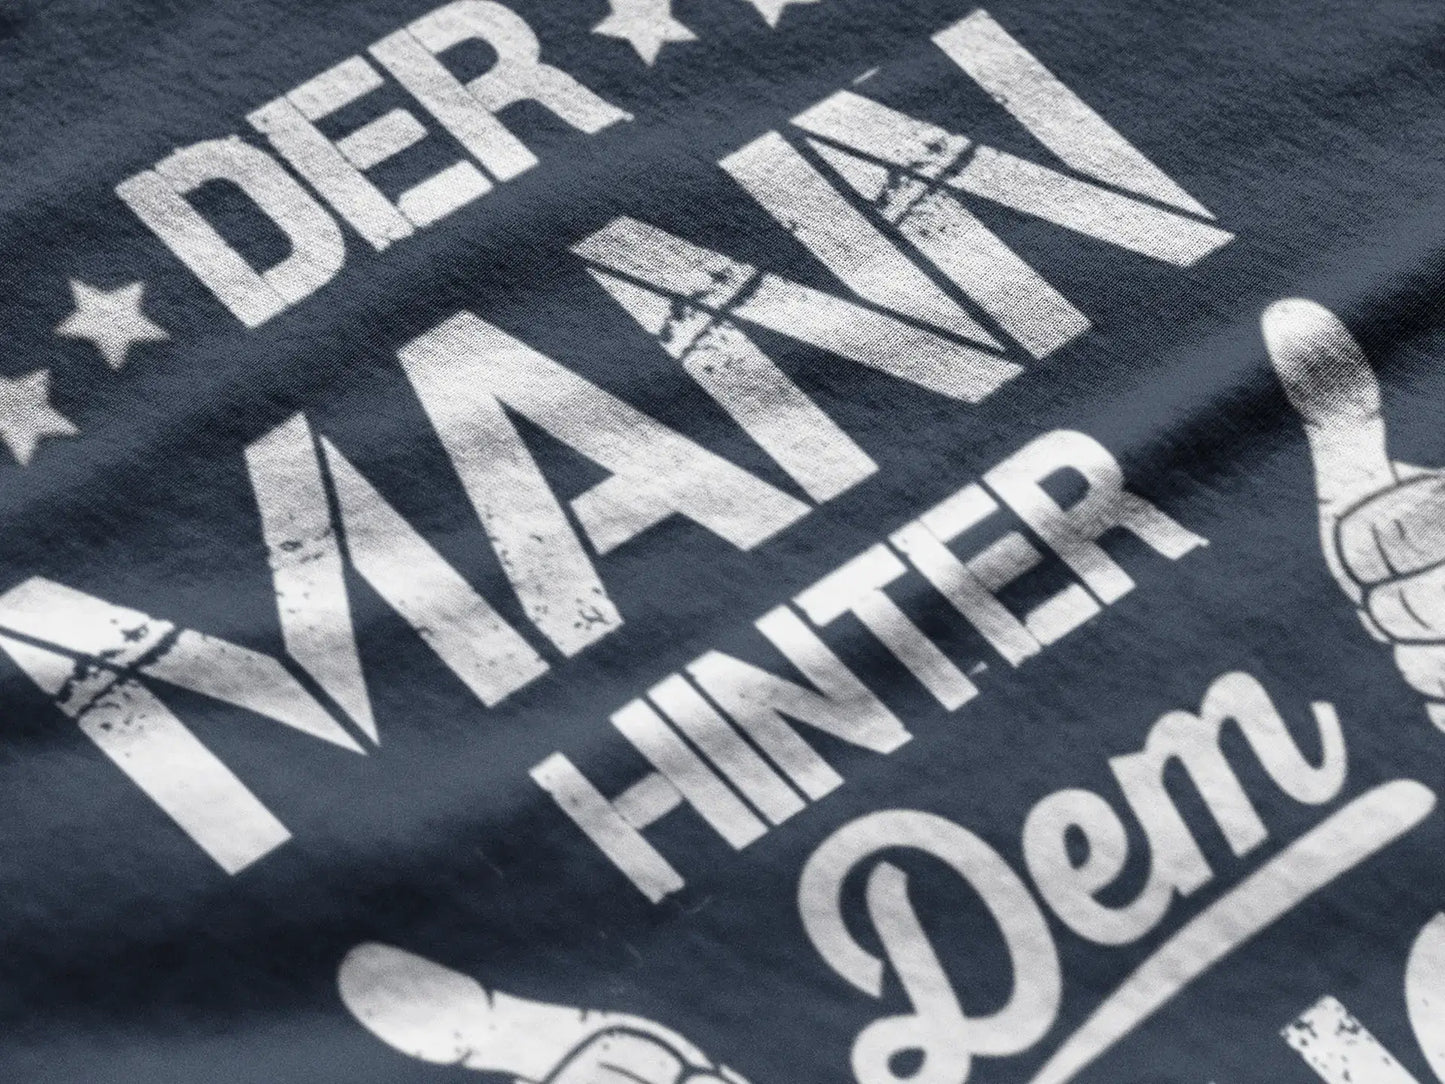 Men's Graphic T-Shirt Der Mann Hinter Dem Bauch Gift Idea